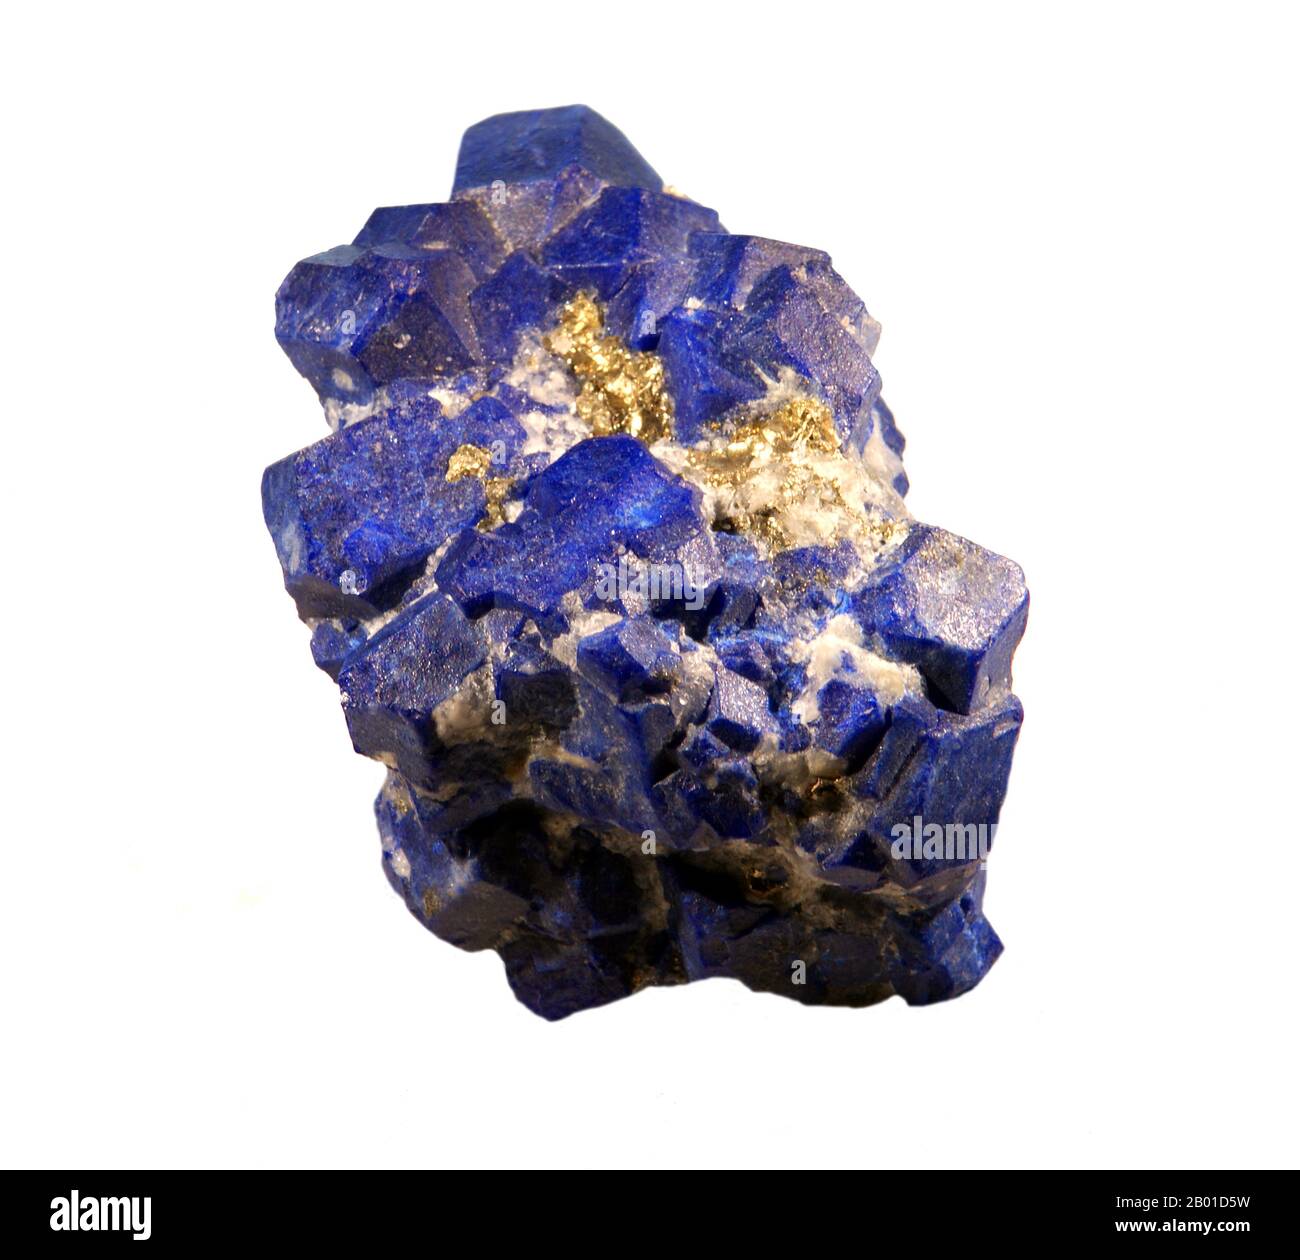 Afghanistan: Lazurite/Lapis Lazuli dal distretto SAR-e-Sang. Foto di Didier Descouens (CC BY-SA 4,0 License). Lapis lazuli (a volte abbreviato in lapis) è una pietra semi-preziosa relativamente rara che è stata apprezzata fin dall'antichità per il suo colore blu intenso. Lapis lazuli è stato raccolto dalle miniere nella provincia di Badakhshan in Afghanistan per oltre 6000 anni e ci sono fonti che si trovano ad est come la regione intorno al lago Baikal in Siberia. Il commercio della pietra è abbastanza antico affinchè i monili del lapis siano stati trovati nei siti egiziani e sumeriani predynastic antichi. Foto Stock